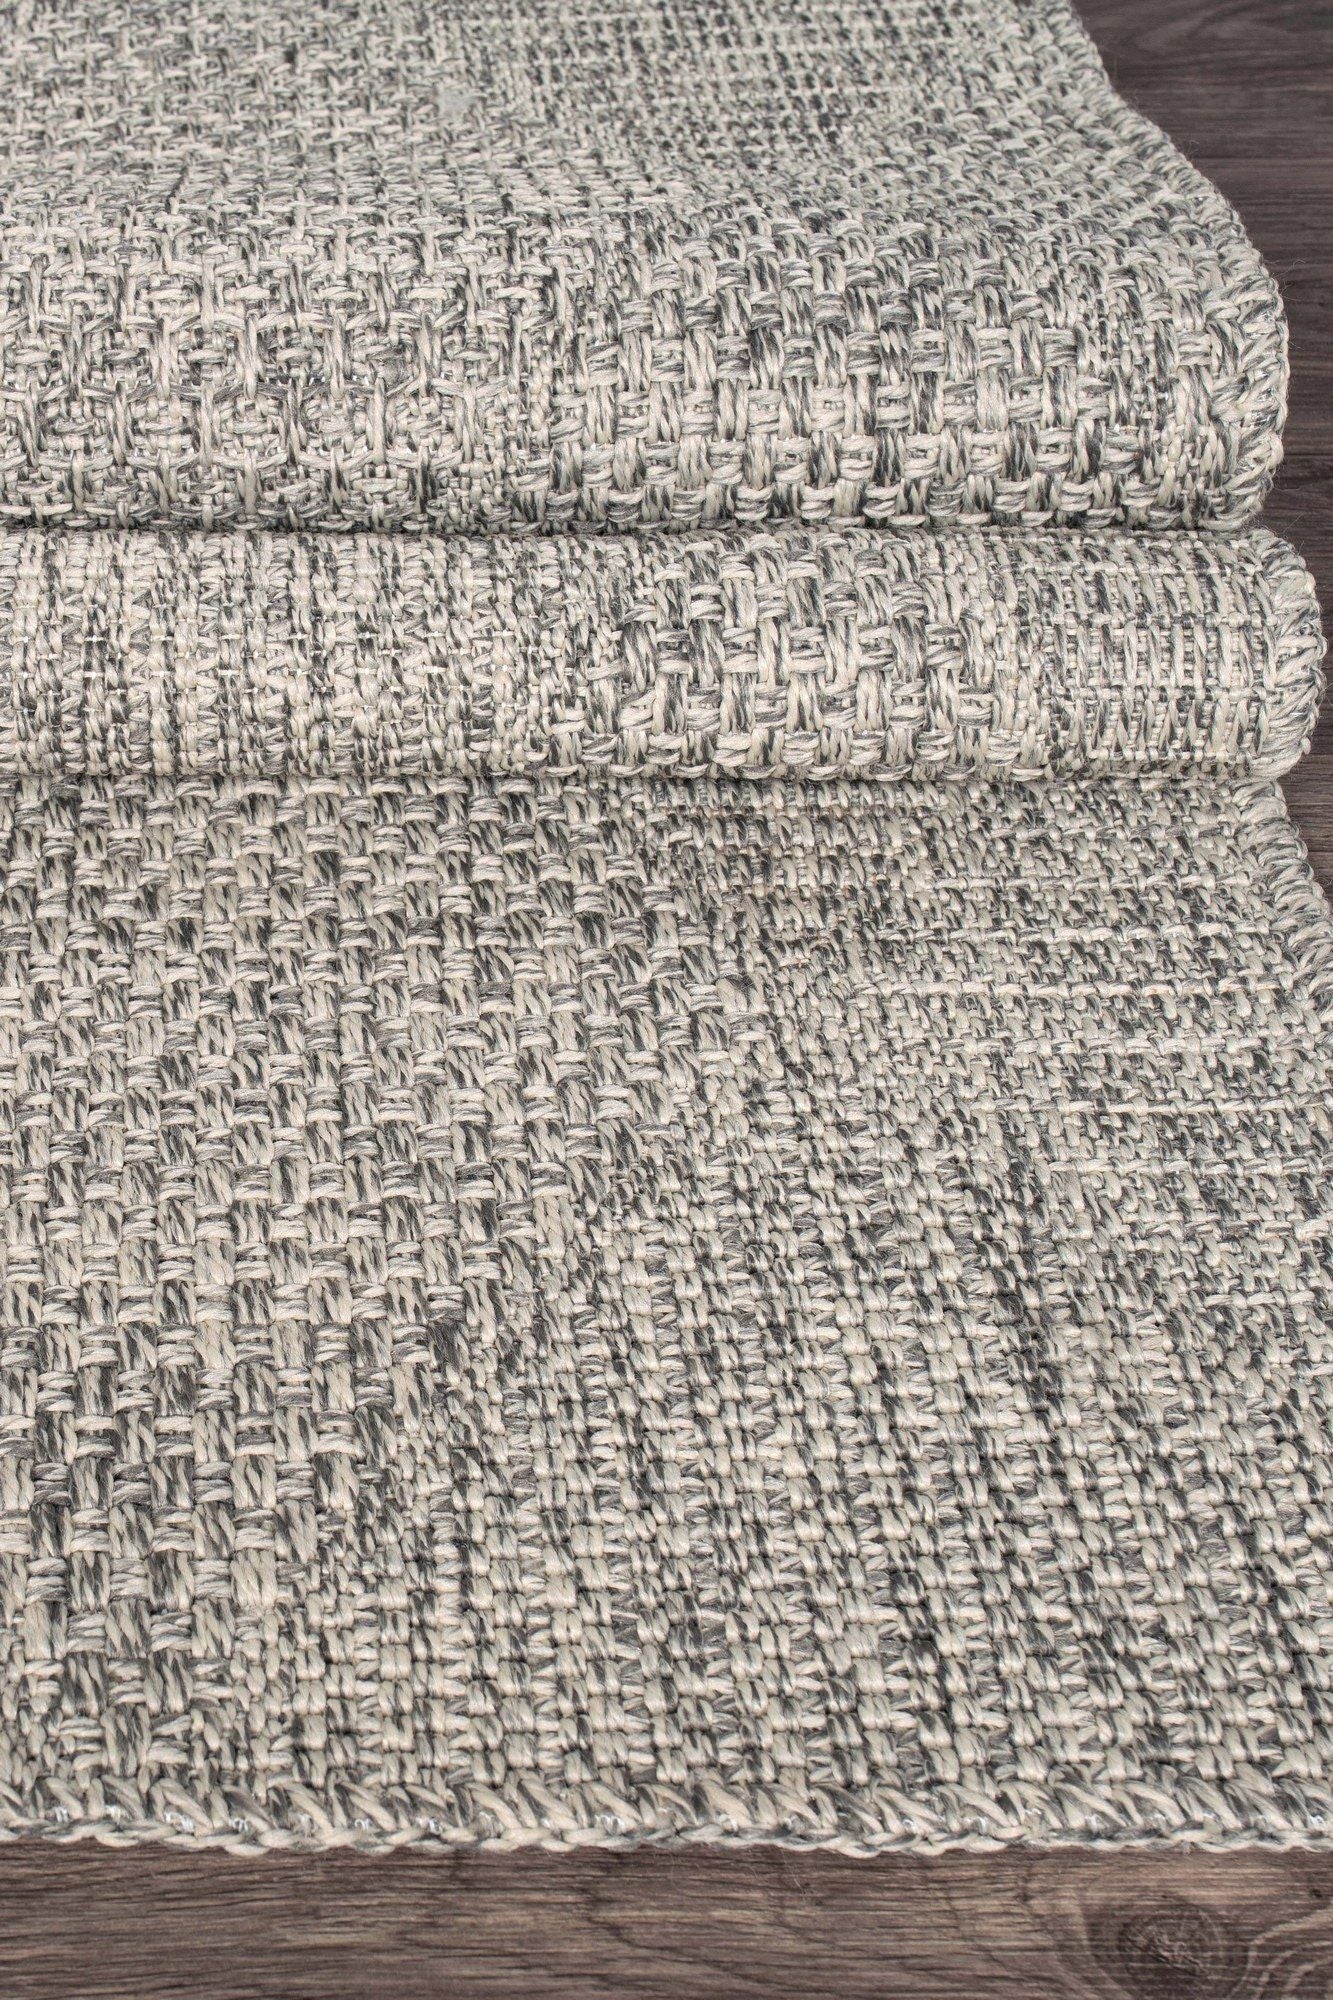 Rusticana 3104 - Hall Carpet (100 x 200)